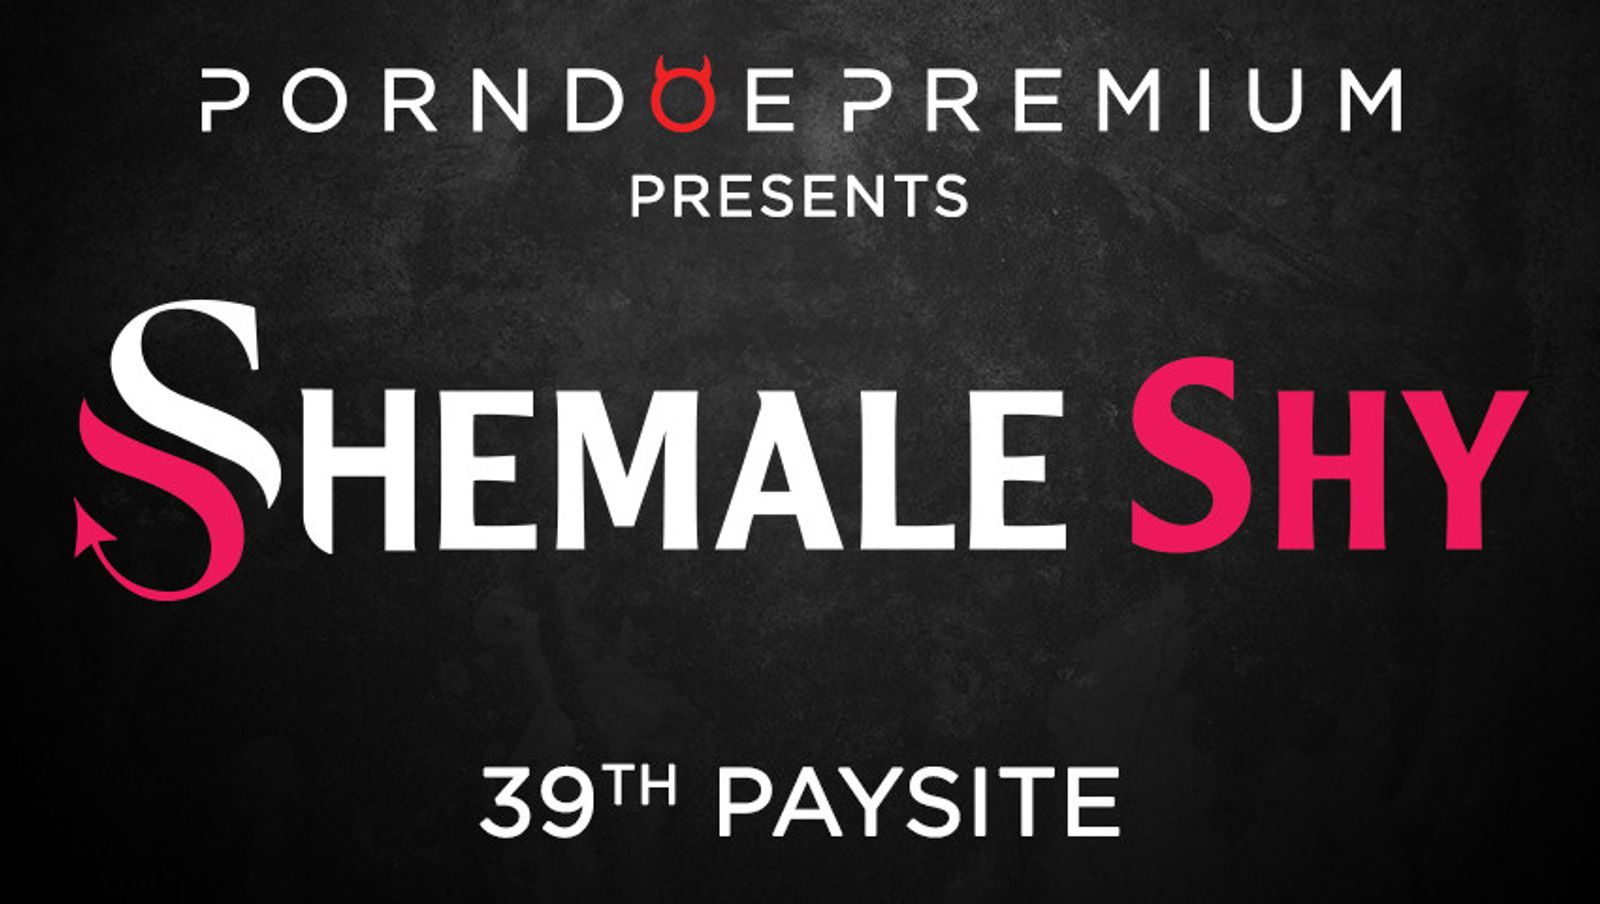 PornDoe Premium Launches ShemaleShy